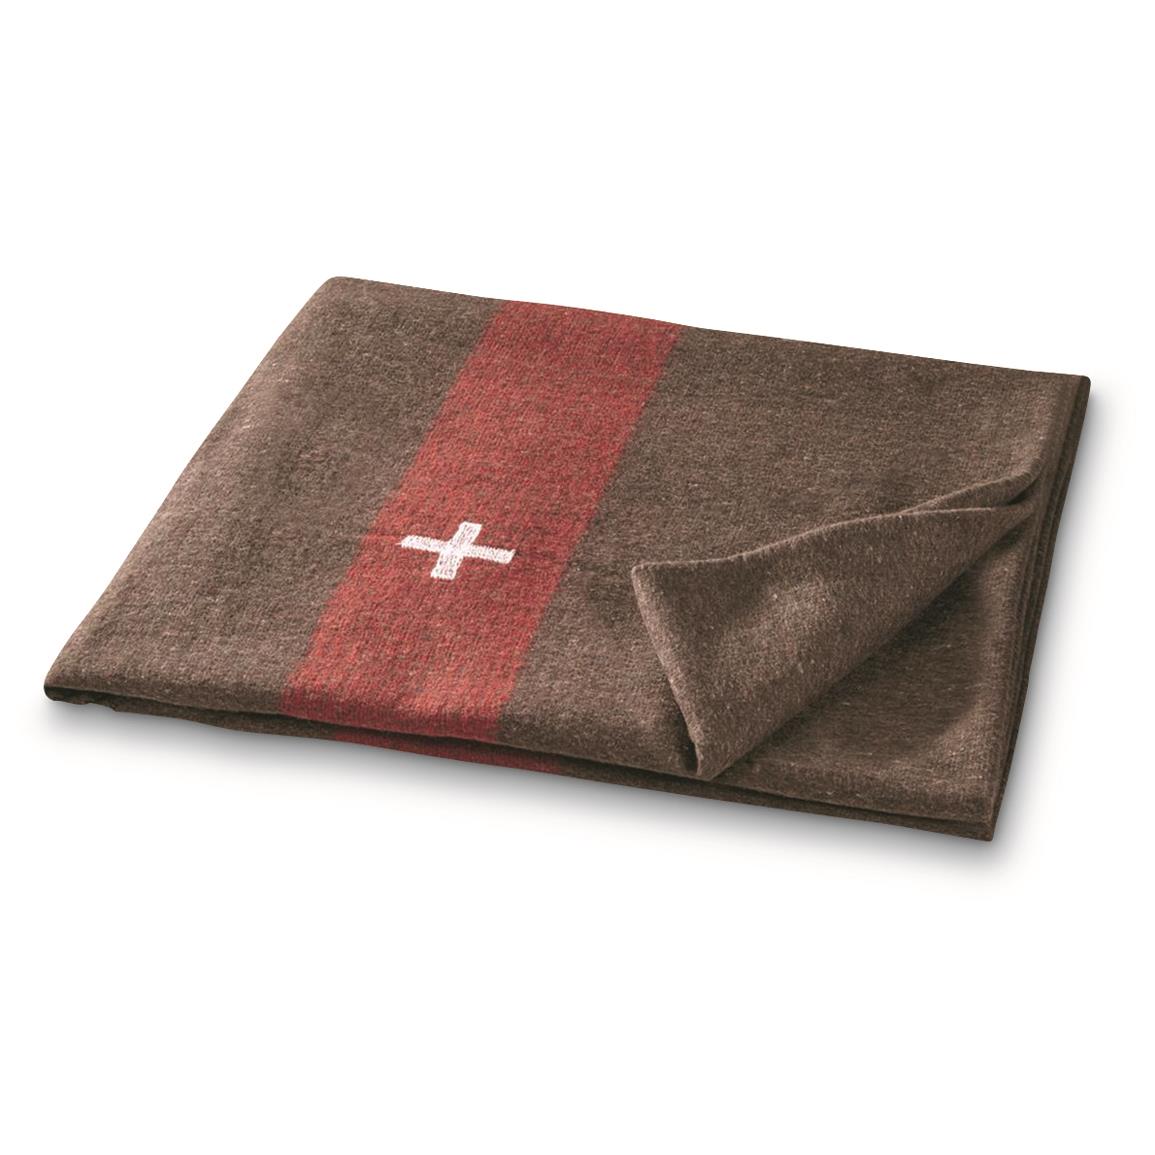 Swiss Military Surplus Wool Blanket